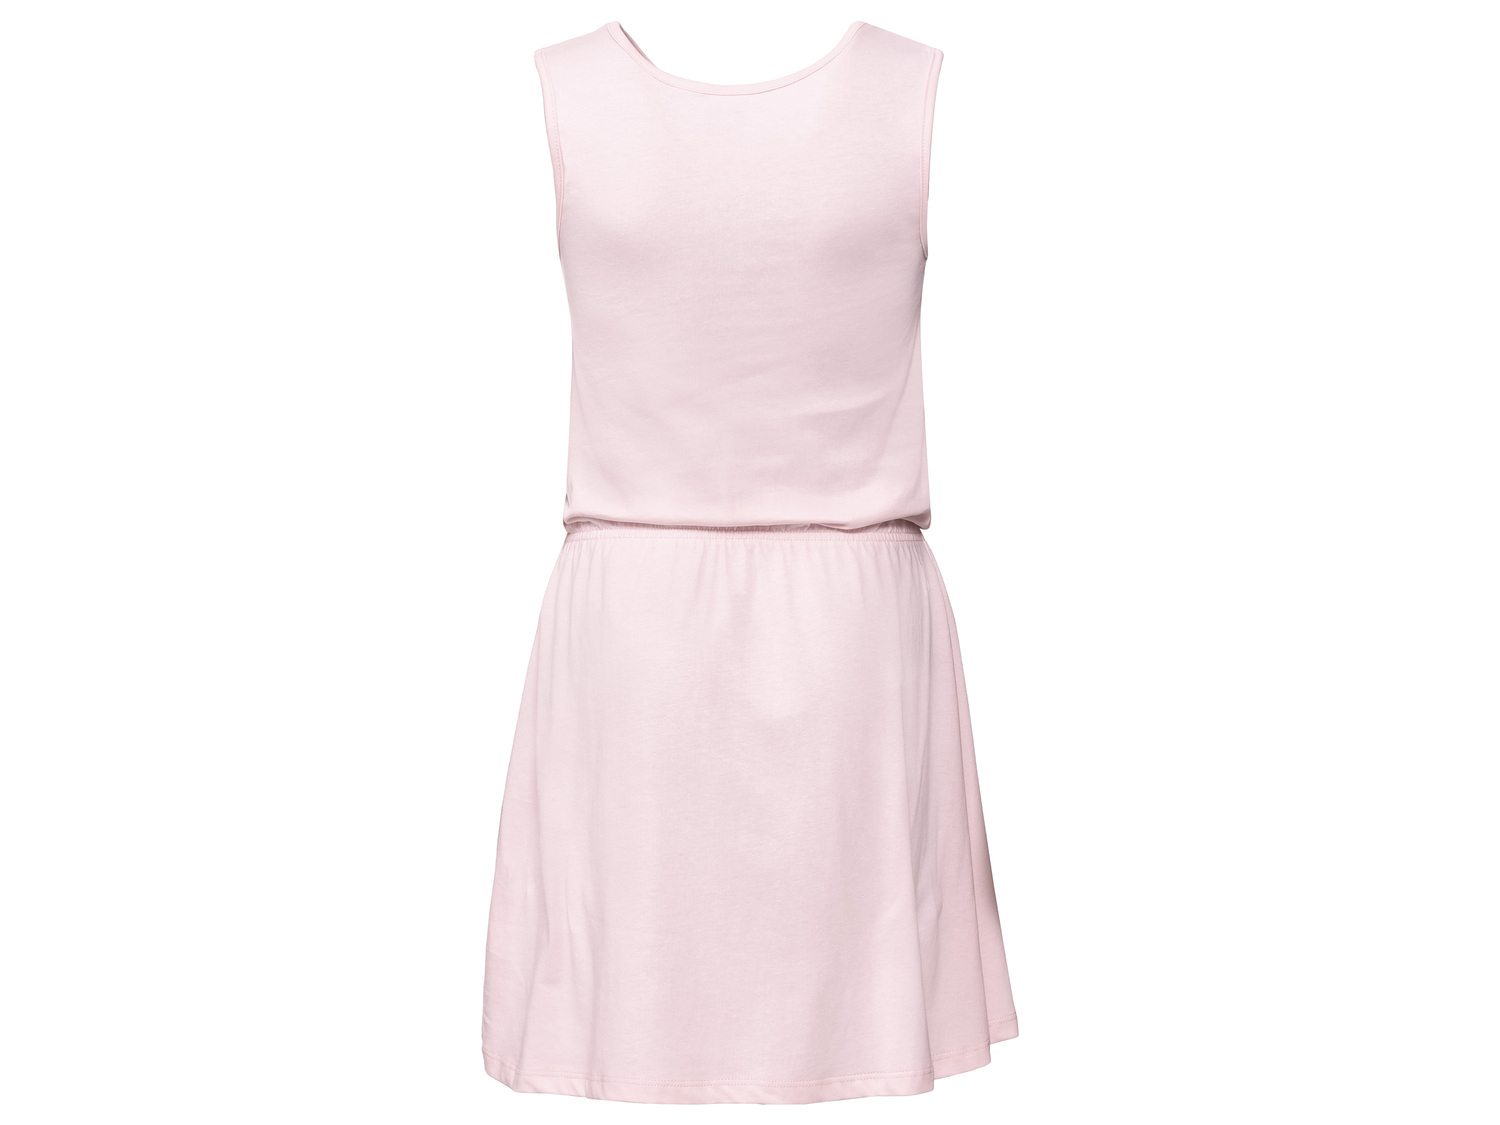 Sukienka Oeko Tex, cena 21,99 PLN 
- rozmiary: 98-140
- 100% bawełny
- wciągana ...